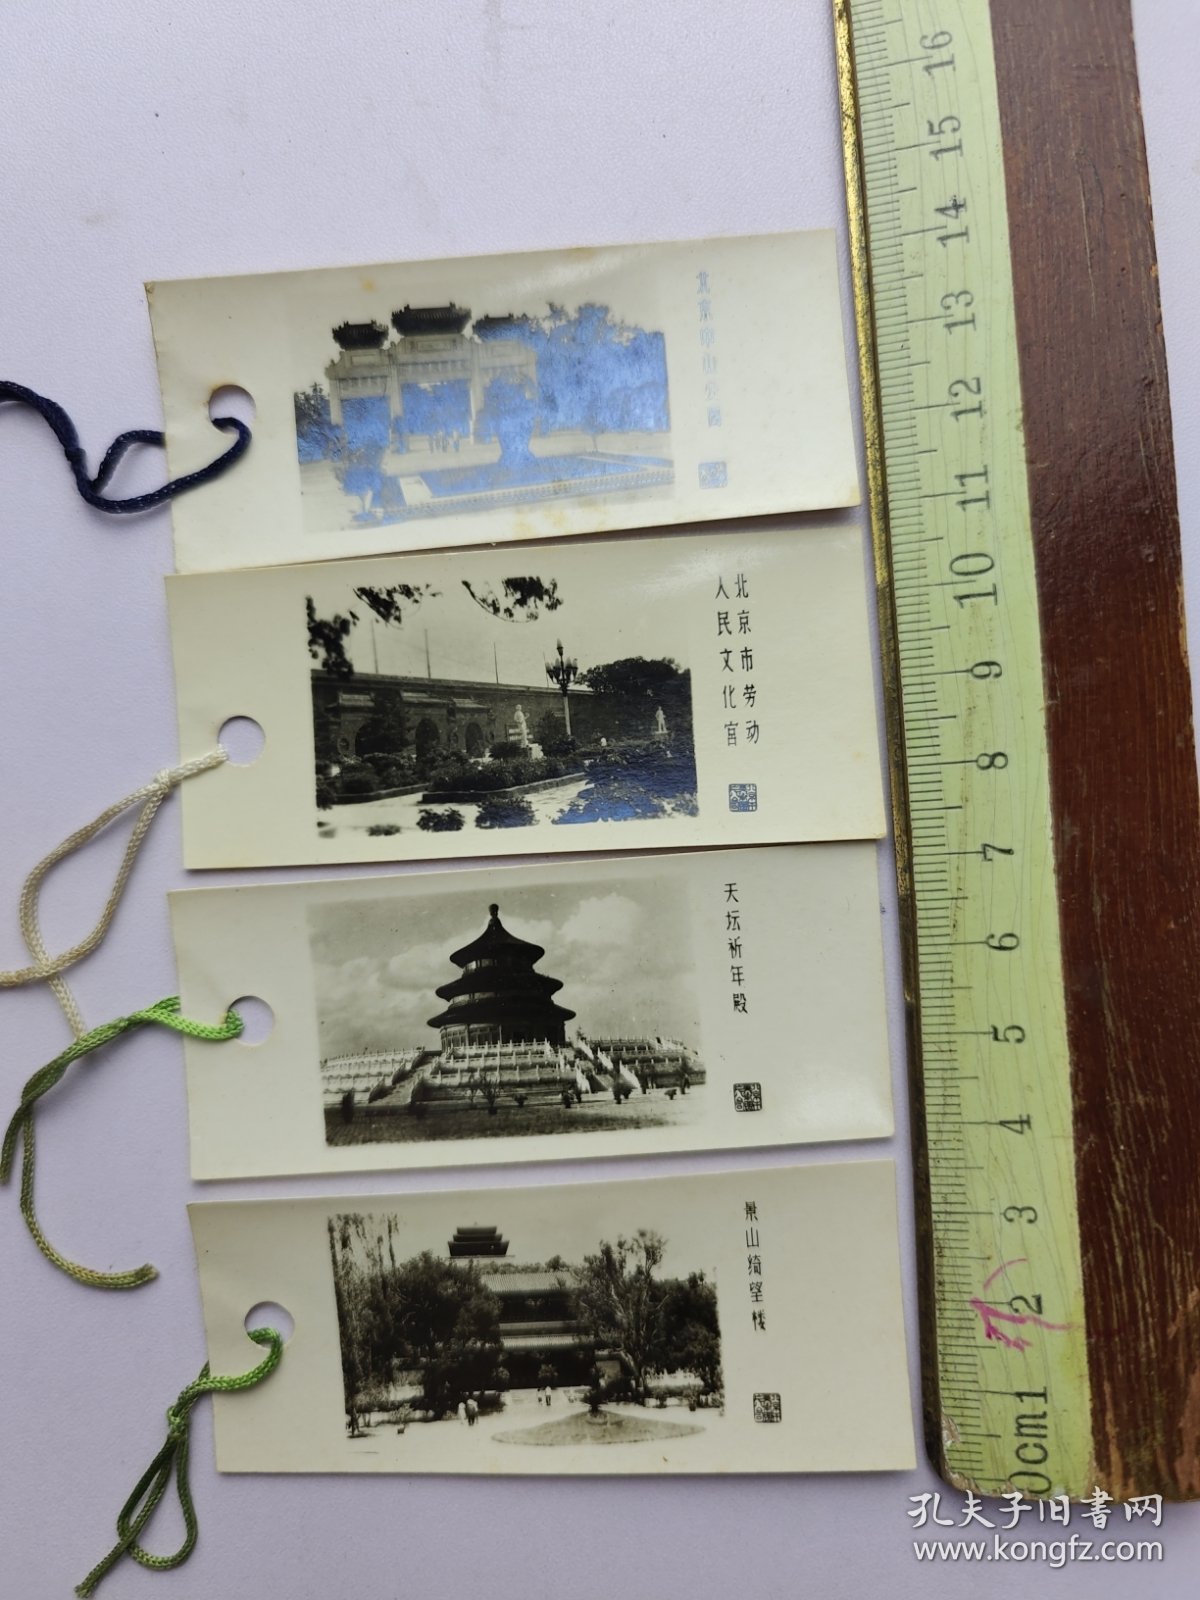 30 老照片书签 4枚 天坛祈年殿 景山绮望楼 北京中山公园 北京市劳动人民文化宫